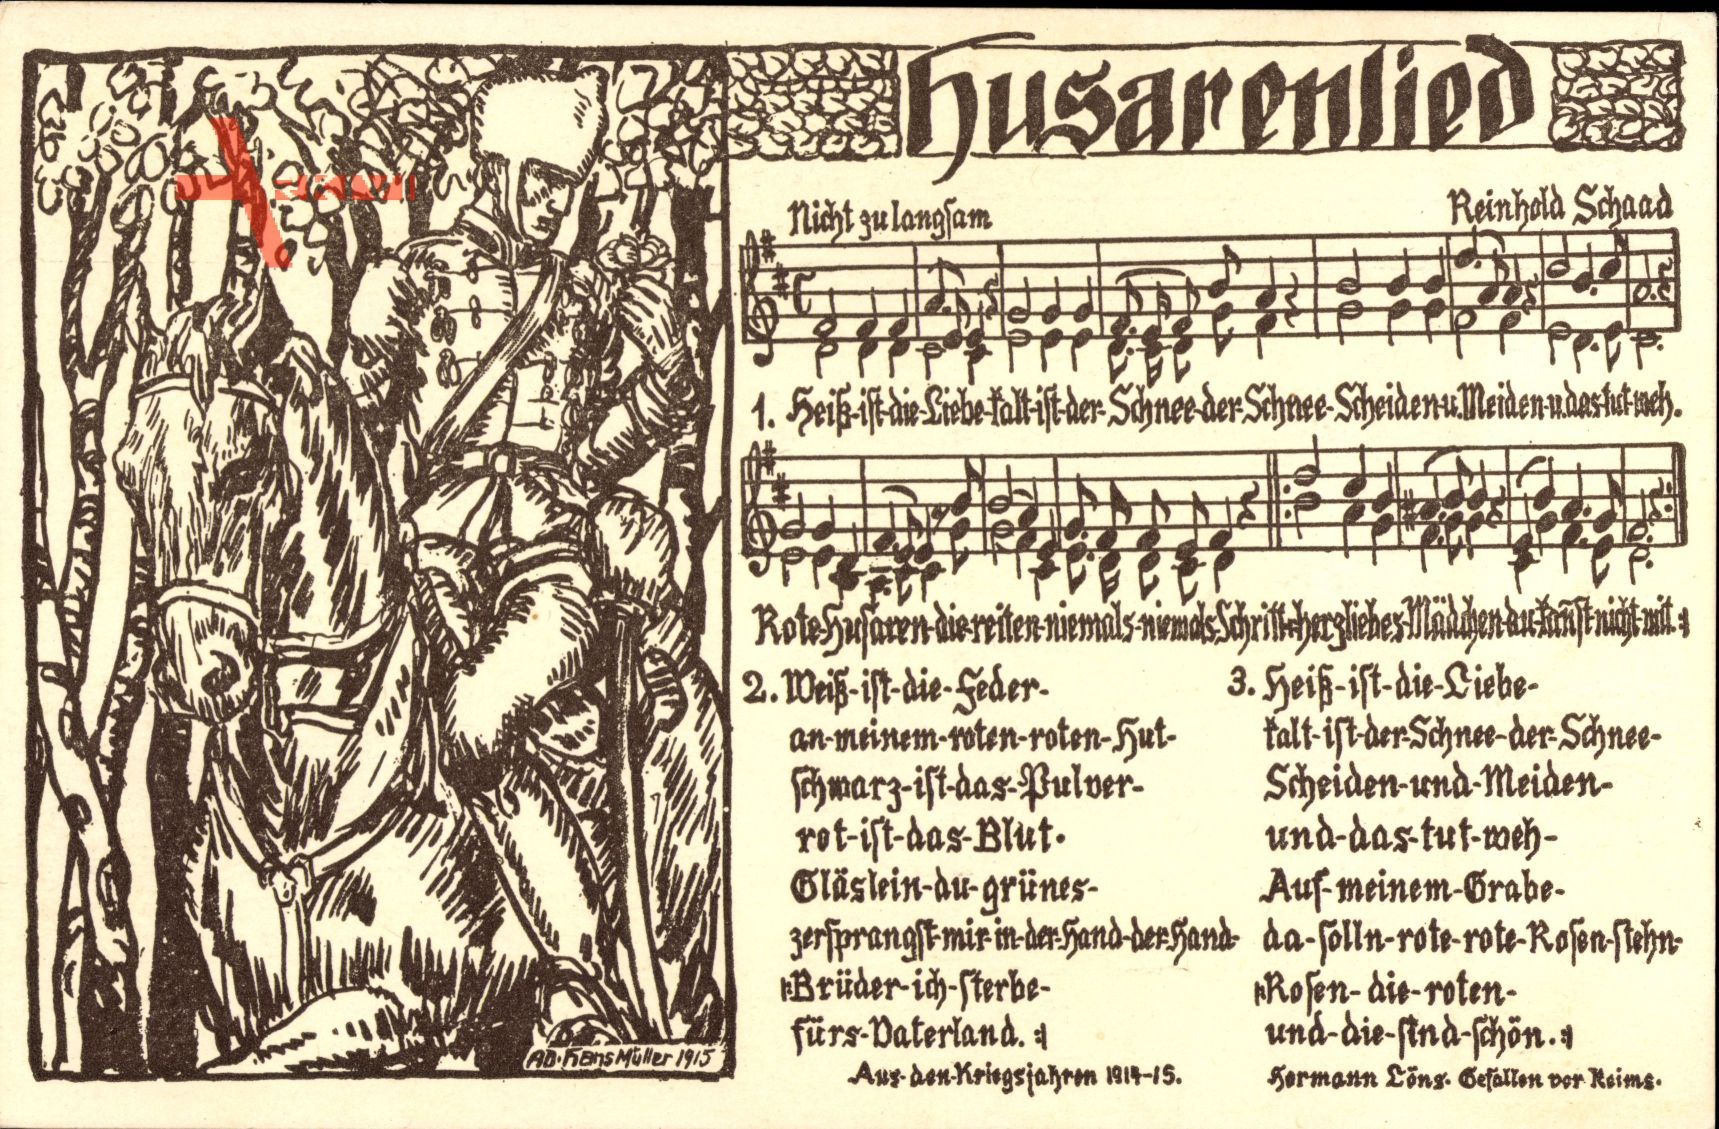 Lied Husarenlied, Reinhold Schaad, Husar, Kaiserreich